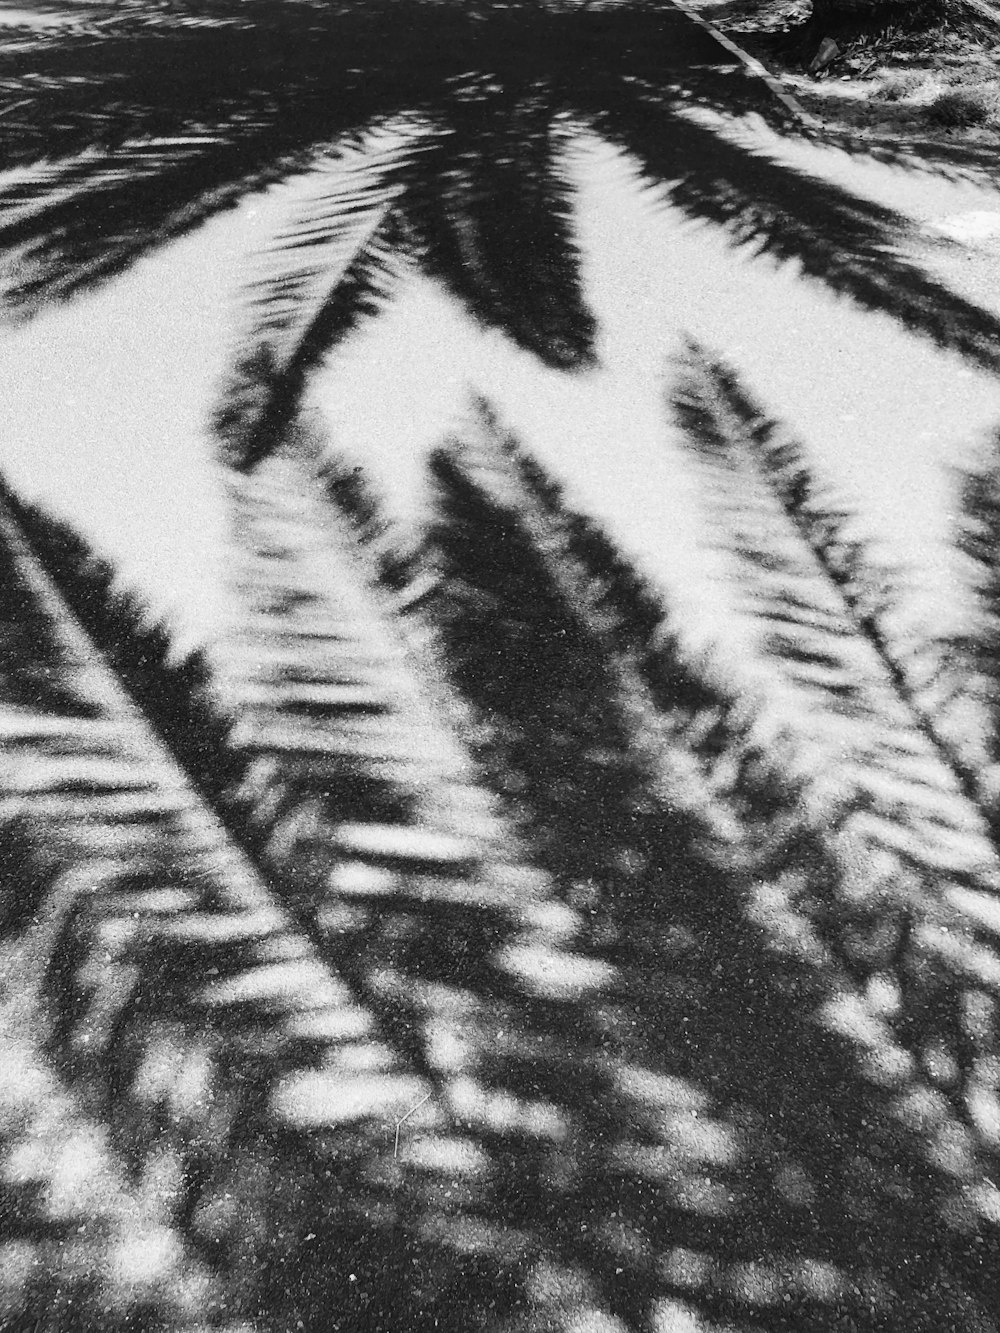 Ein Schwarz-Weiß-Foto einer Palme